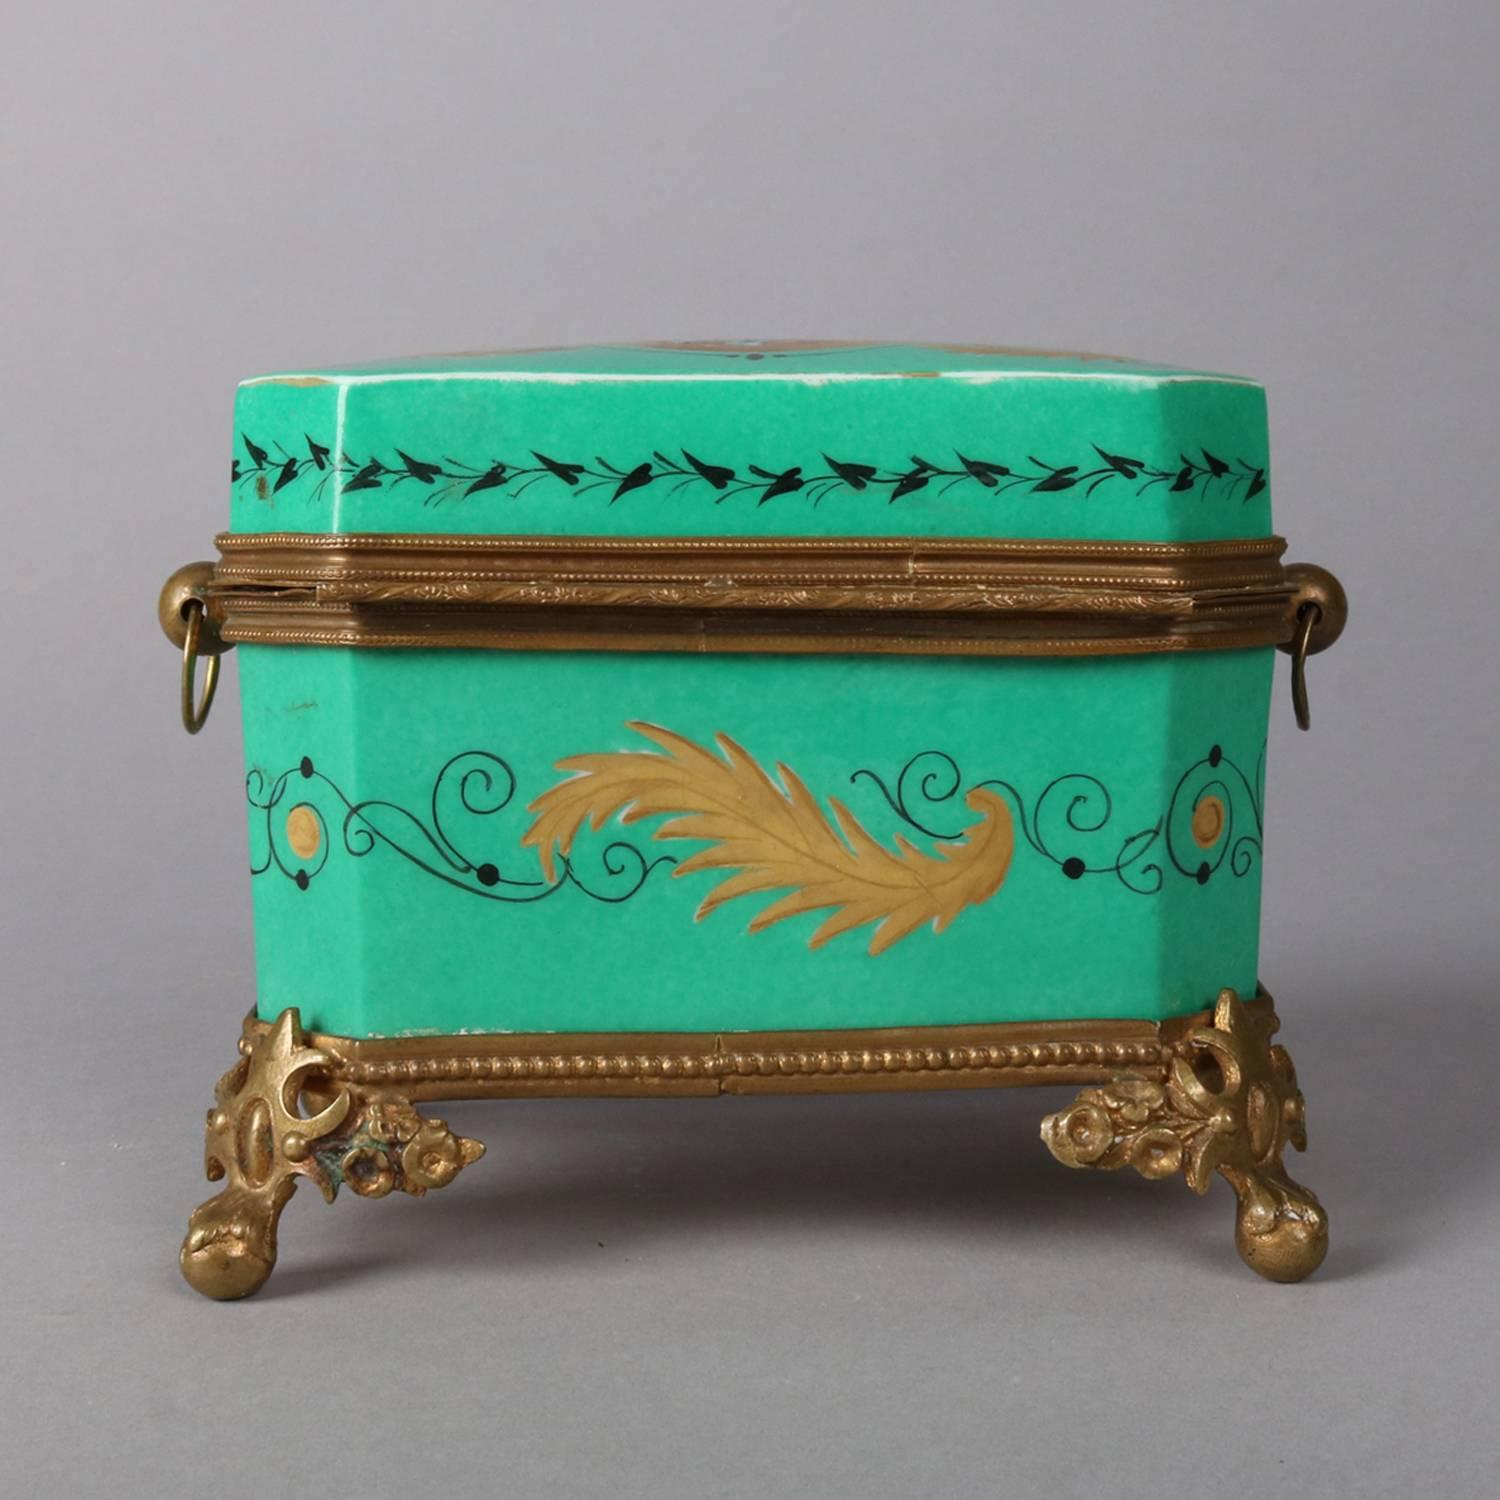 19th Century Antique French Sevres School Porcelain and Gilt Portrait Dresser Box